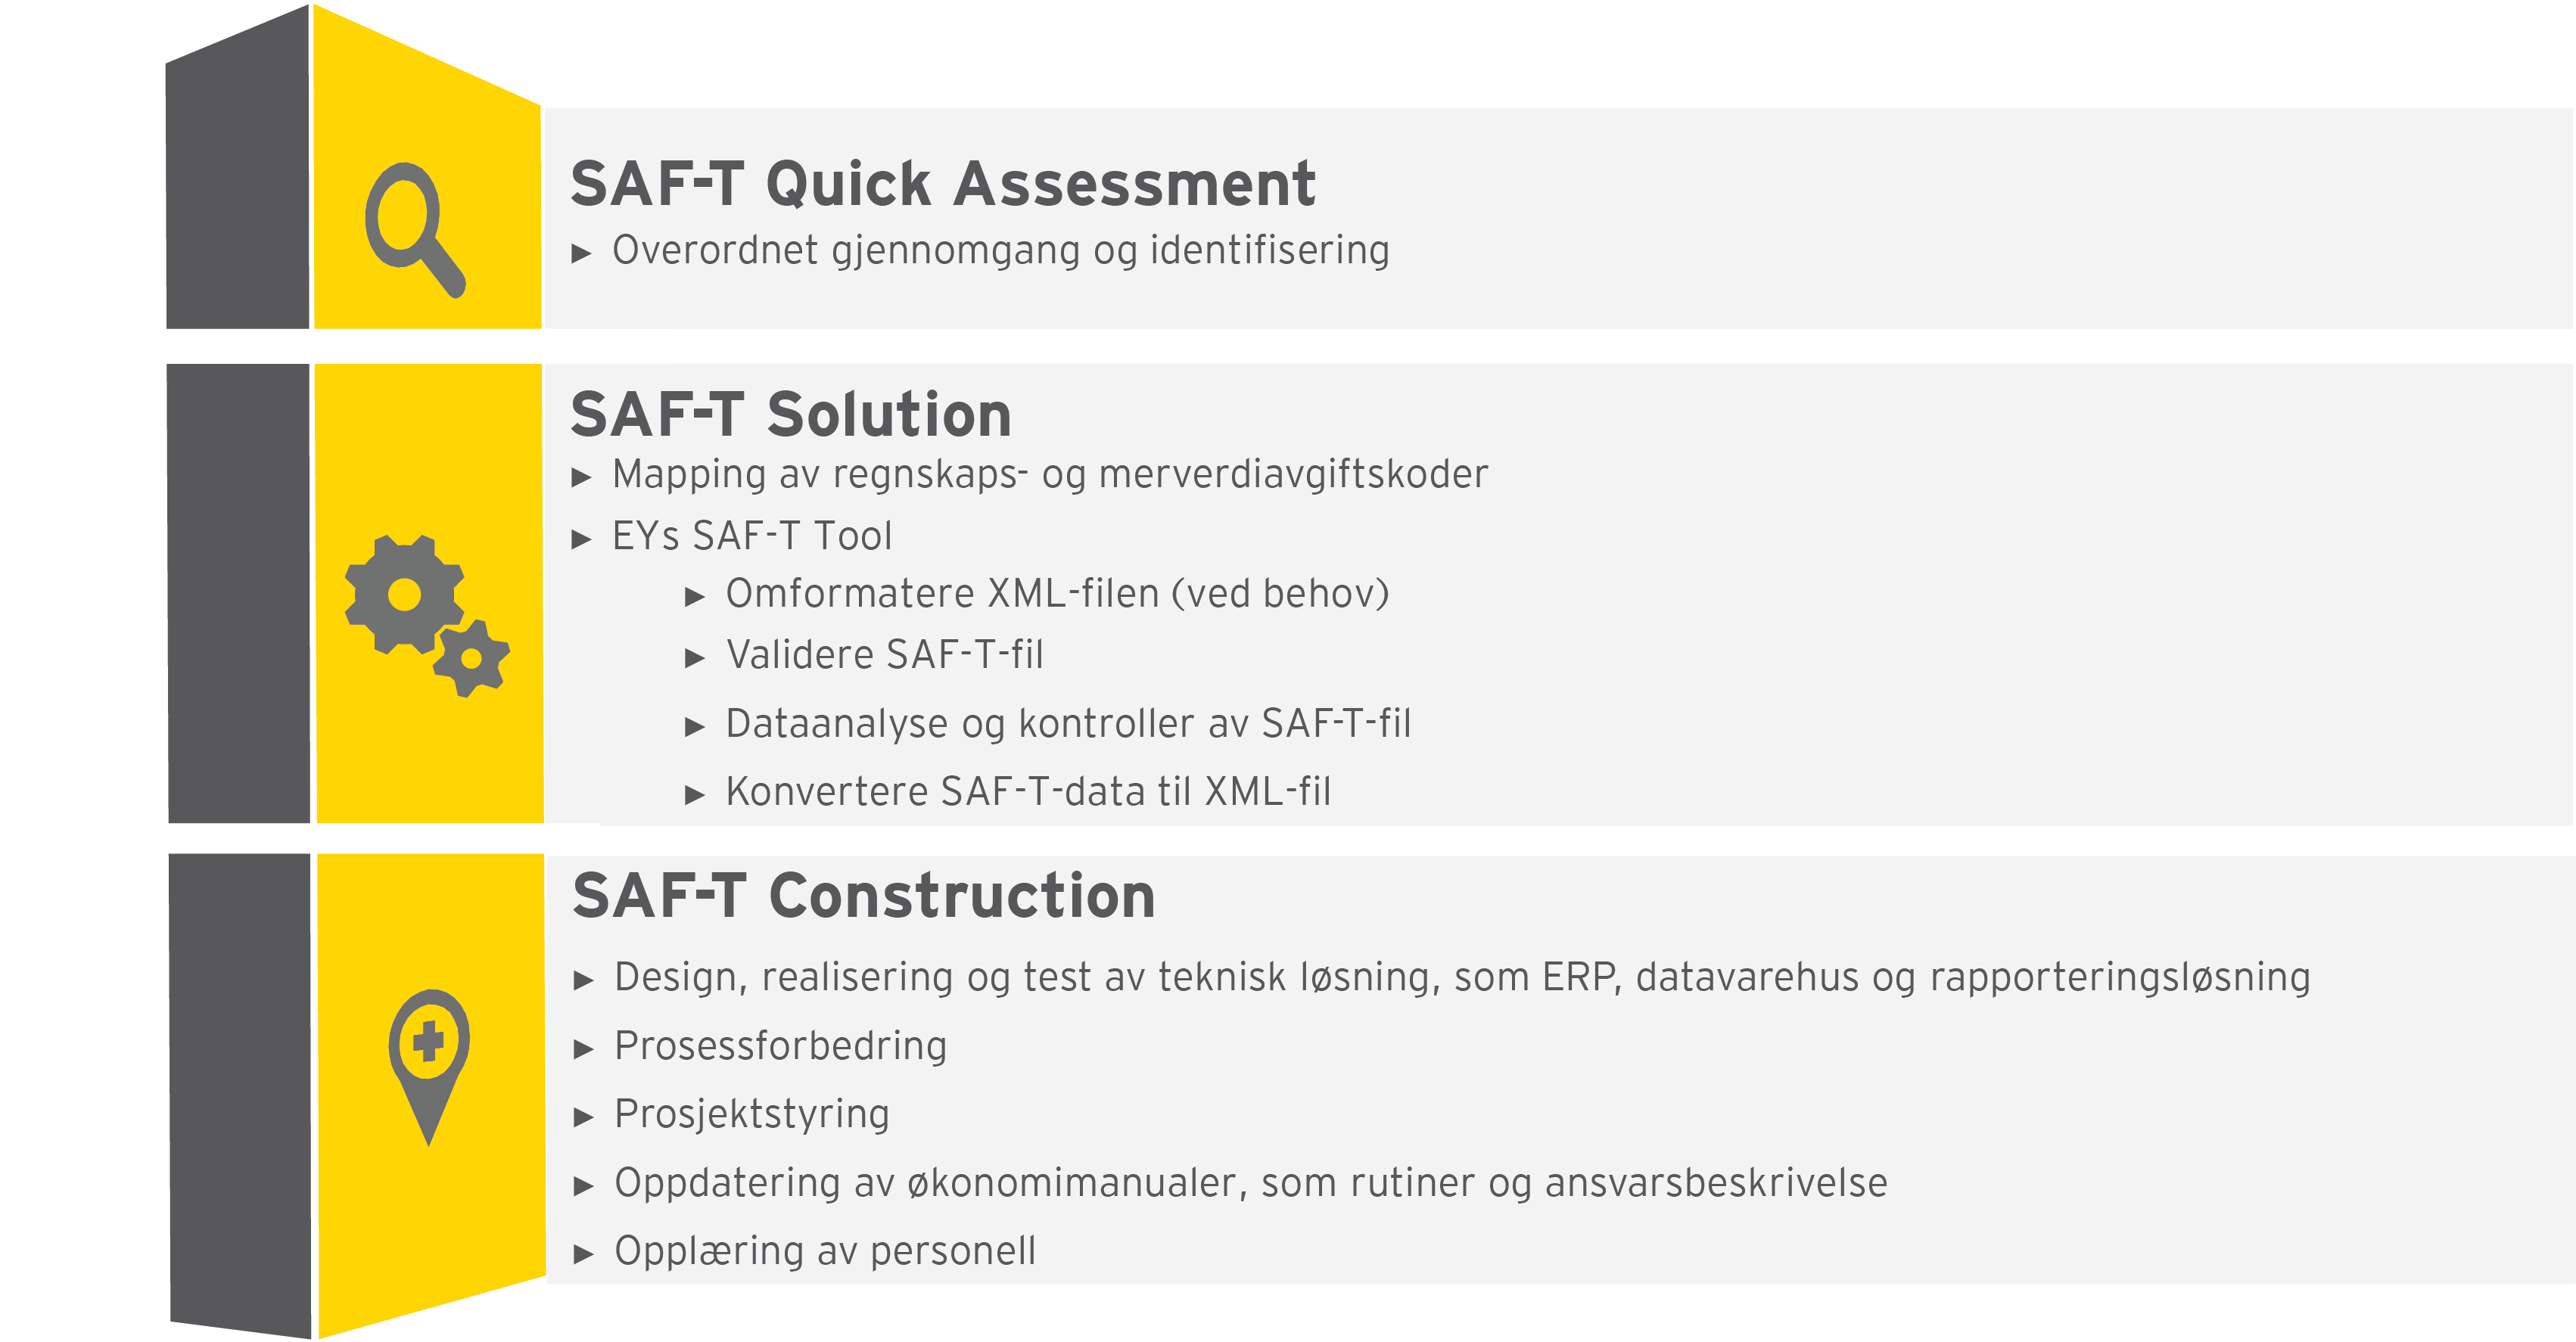 EY tilbyr SAF-T Guick assessment, SAF-T solution og Construction